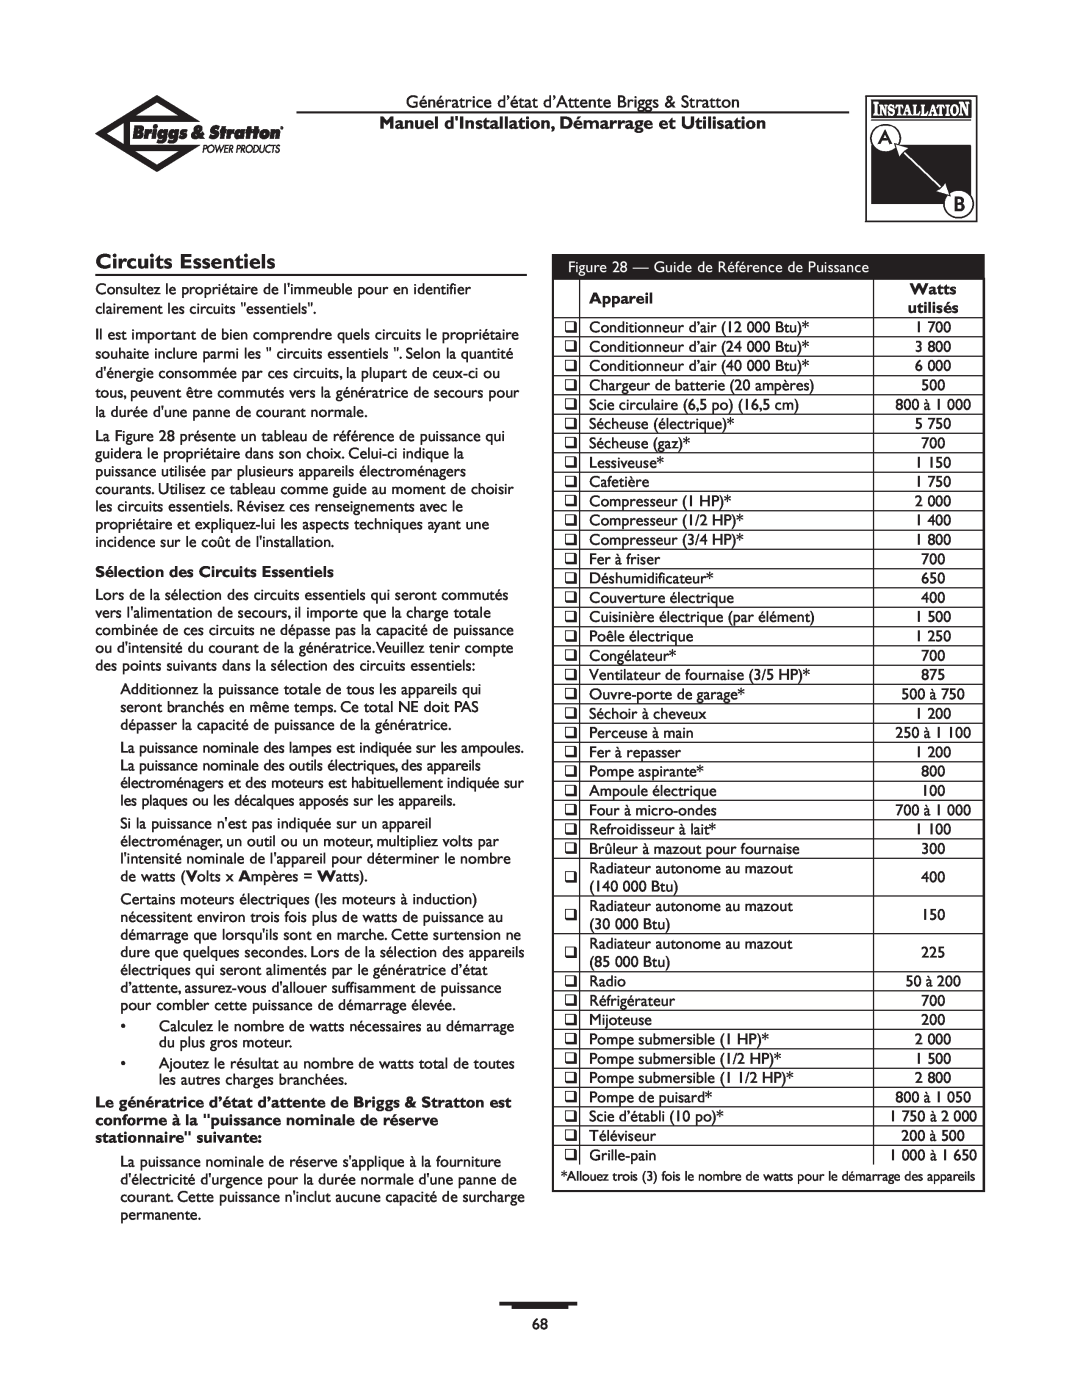 Briggs & Stratton 01897-0 manual Circuits Essentiels, Manuel dInstallation, Démarrage et Utilisation, Appareil, Watts 